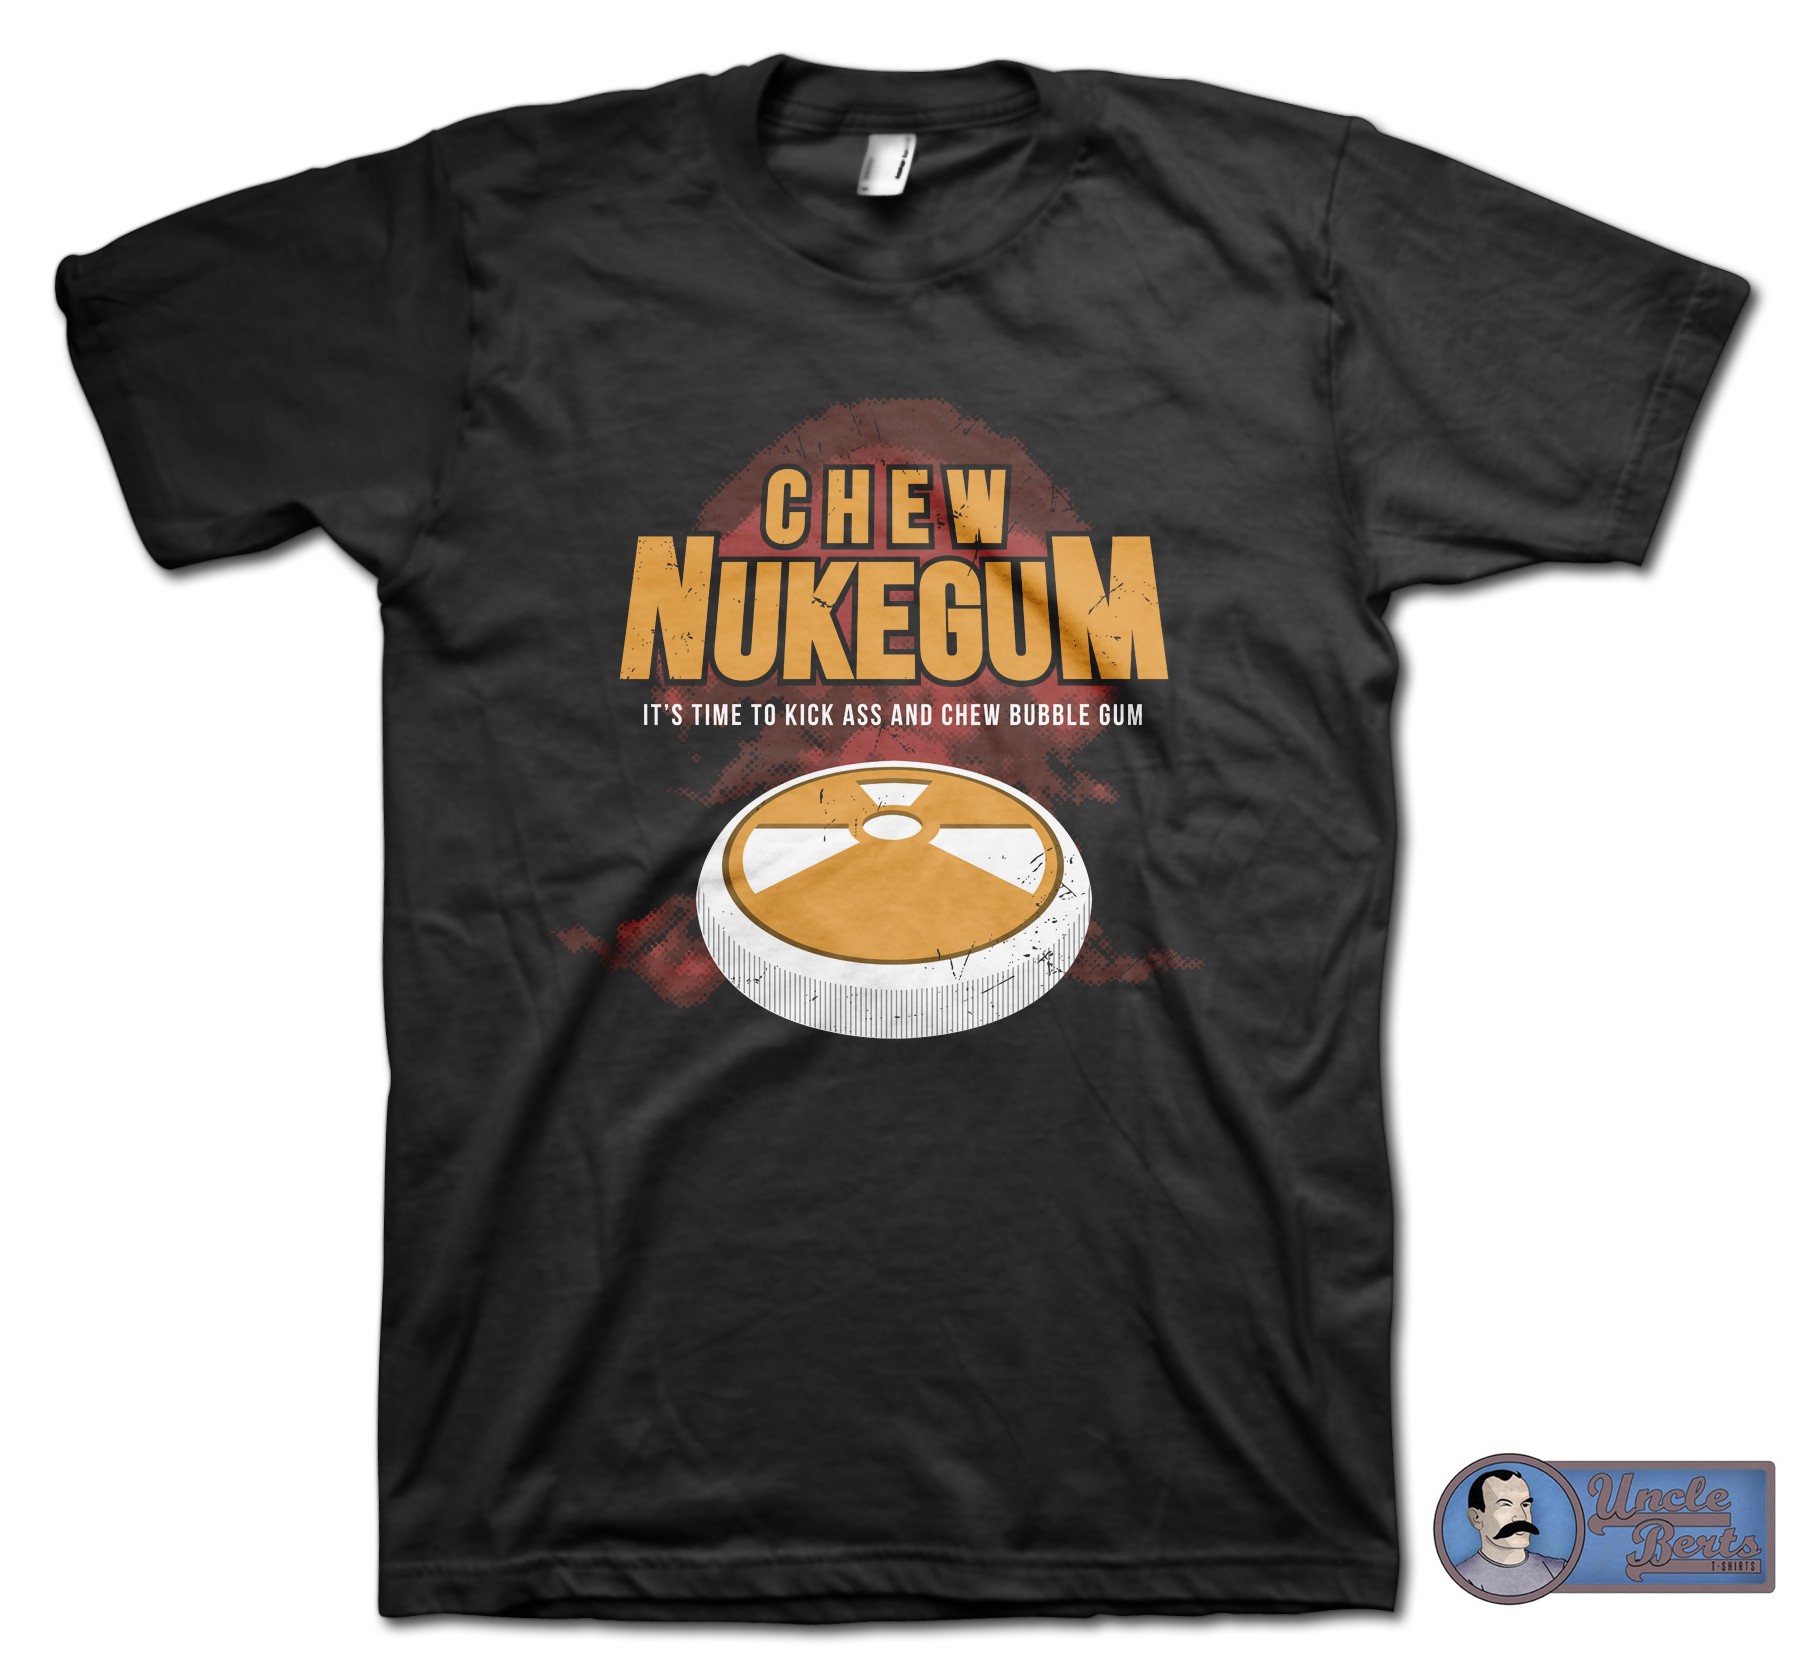 Chew Nukegum inspired by the Duke Nukem series T-Shirt